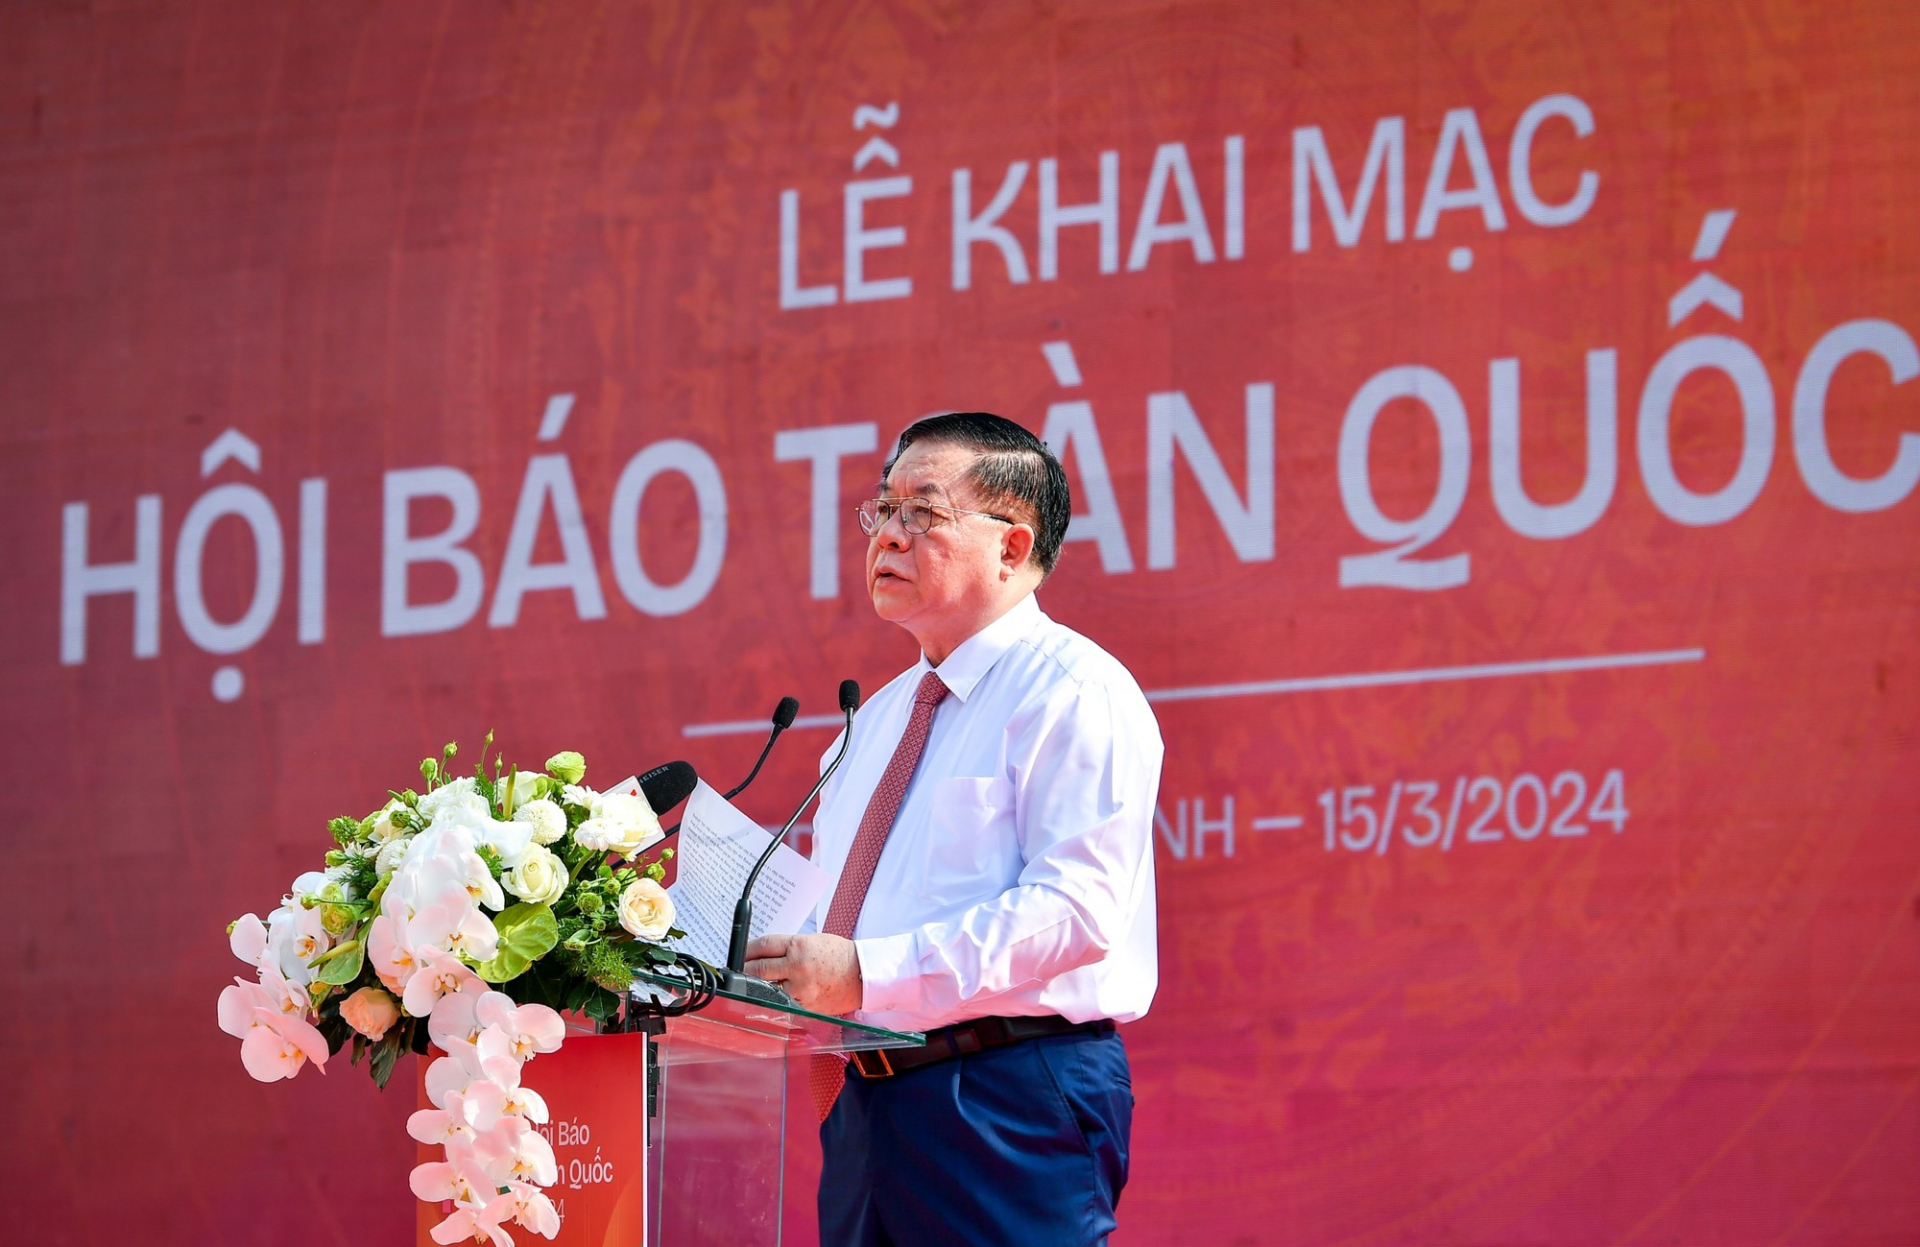 Đồng chí Nguyễn Trọng Nghĩa, Bí thư Trung ương Đảng, Trưởng ban Tuyên giáo Trung ương phát biểu tại lễ khai mạc Hội Báo toàn quốc 2024.